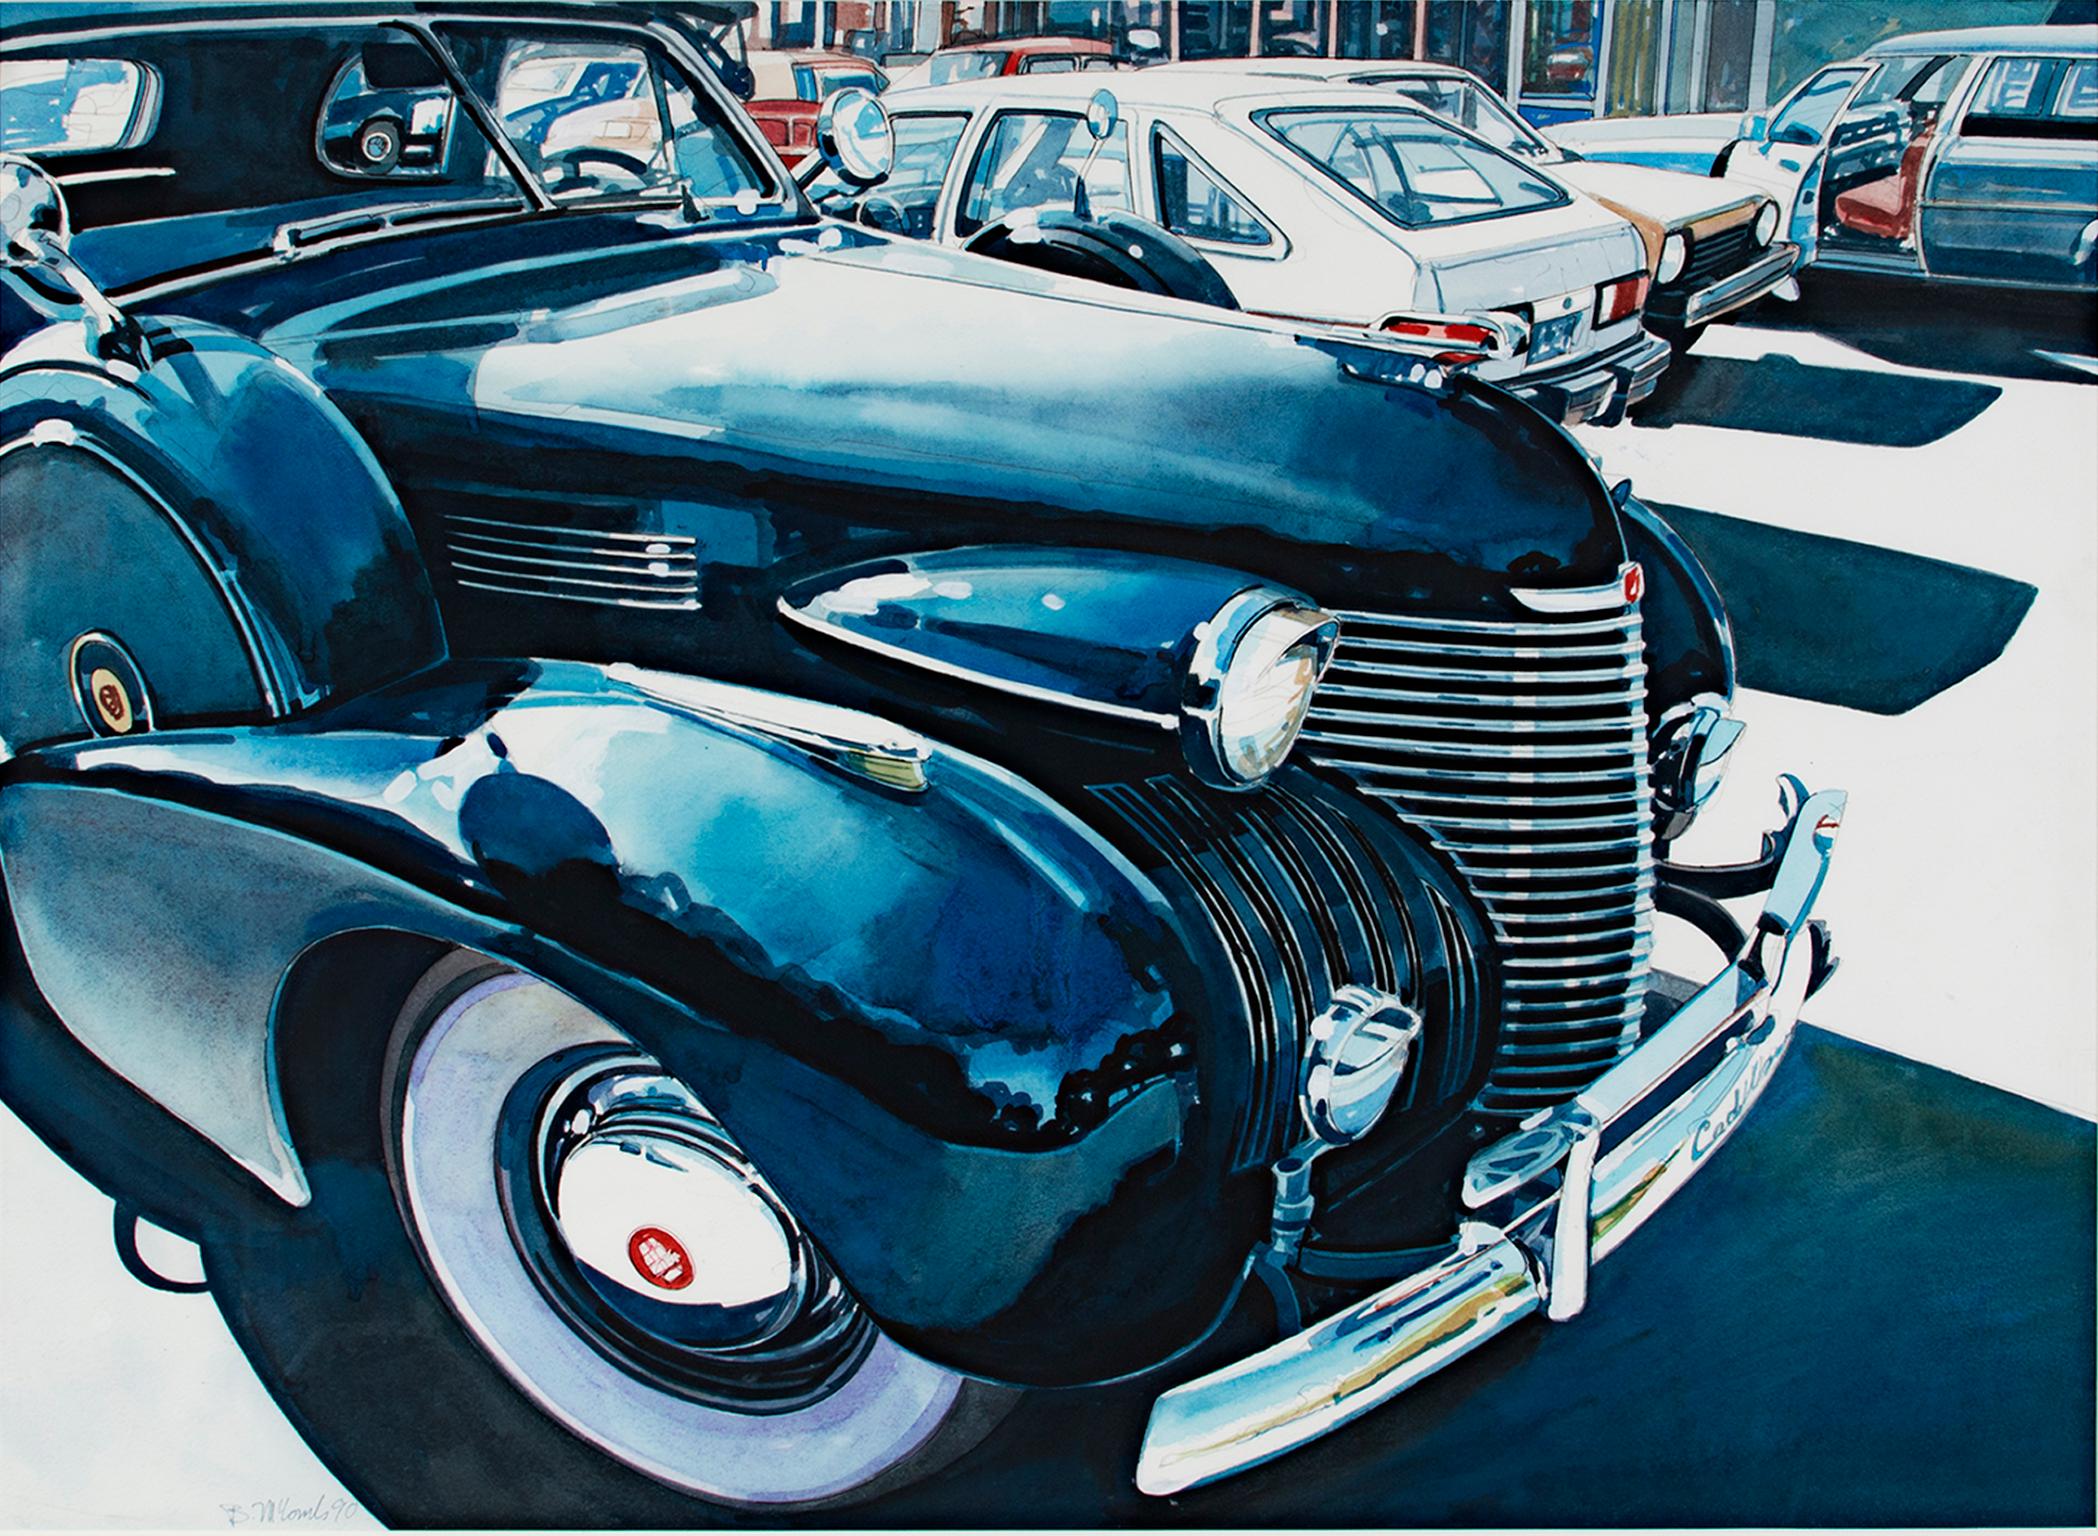 "Cadillac" ist ein originales fotorealistisches Aquarell von Bruce McCombs. Der Künstler hat das Werk unten links signiert. Es zeigt ein tiefblaues Auto auf einem Parkplatz mit einer Gebäudekuppel, die sich in der Reifenabdeckung spiegelt. 

21 3/4"